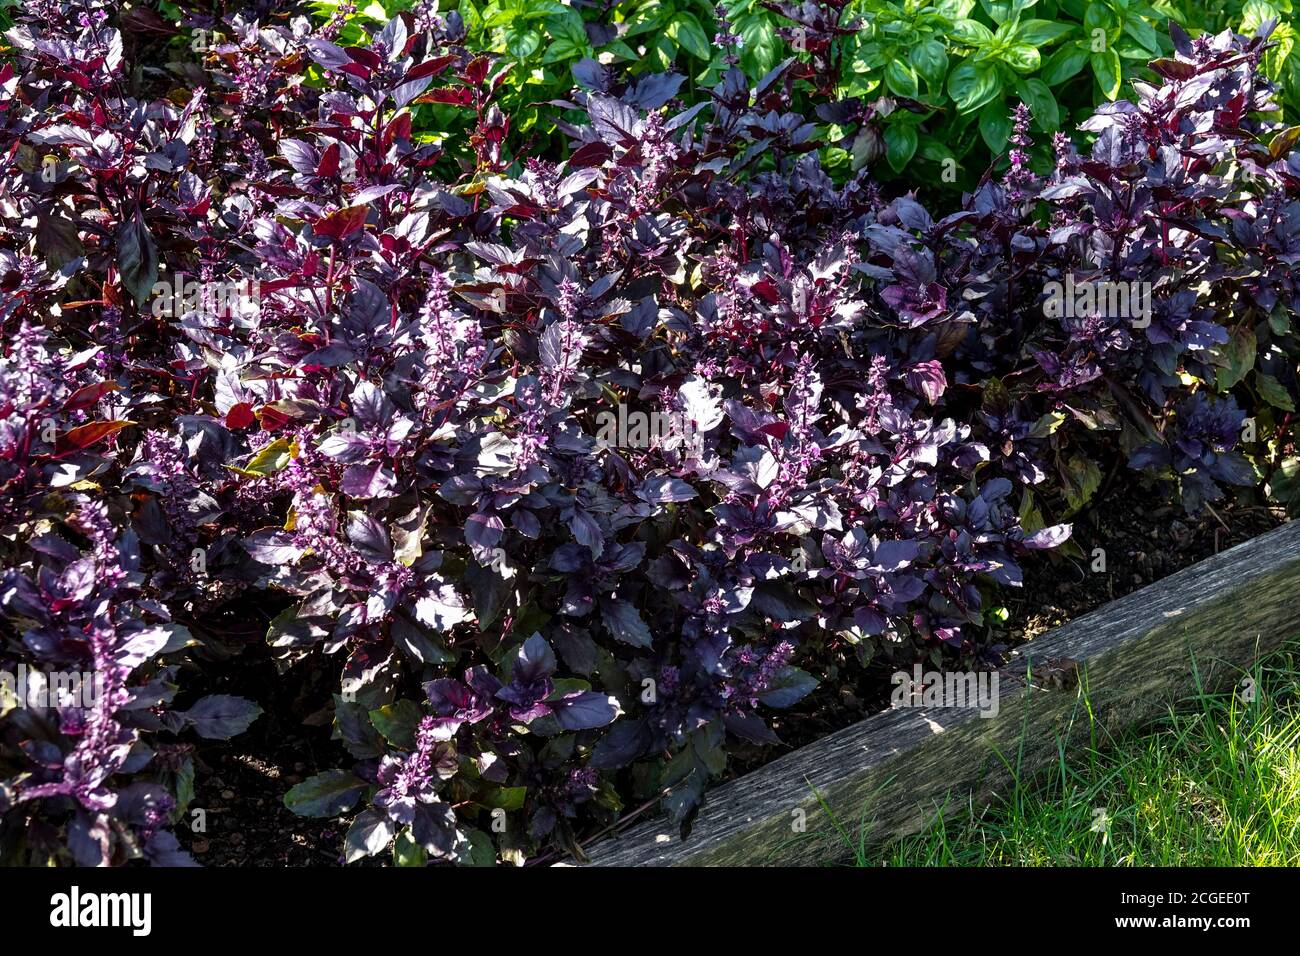 Lit surélevé herbes de jardin de légumes basilic pourpre, herbe pour la cuisine Ocimum basilicum herbes de jardin basilic Banque D'Images